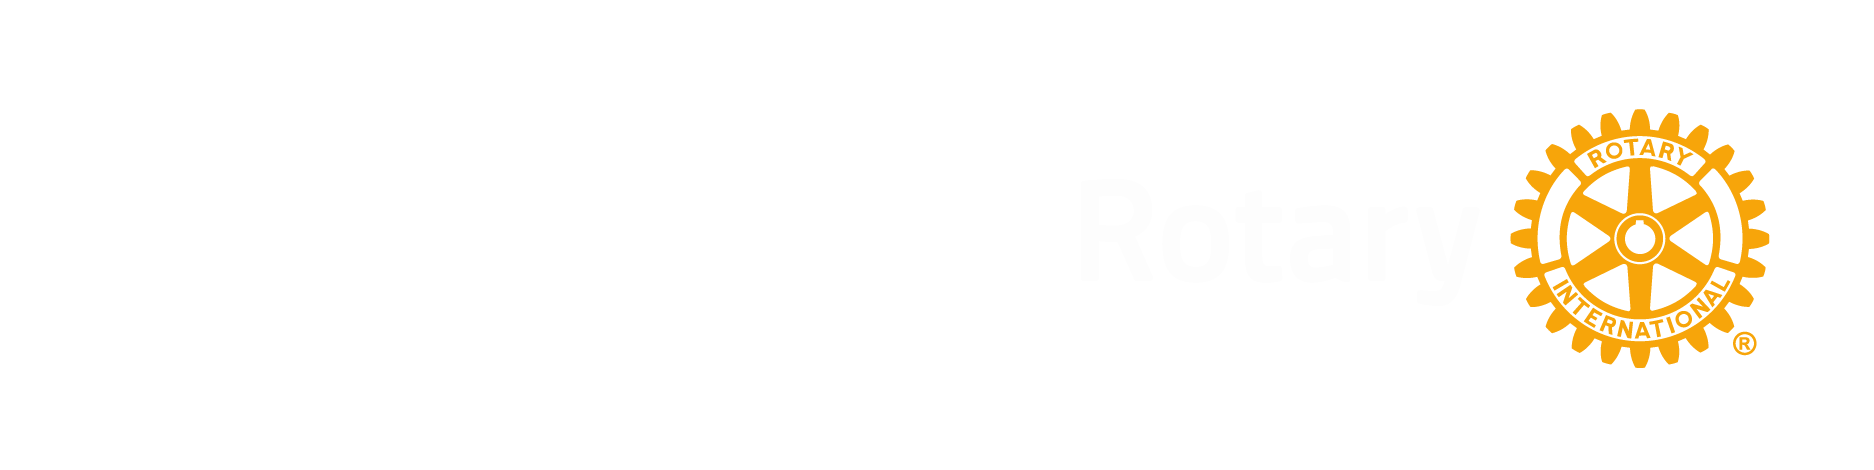 Logo Rotary con distretto